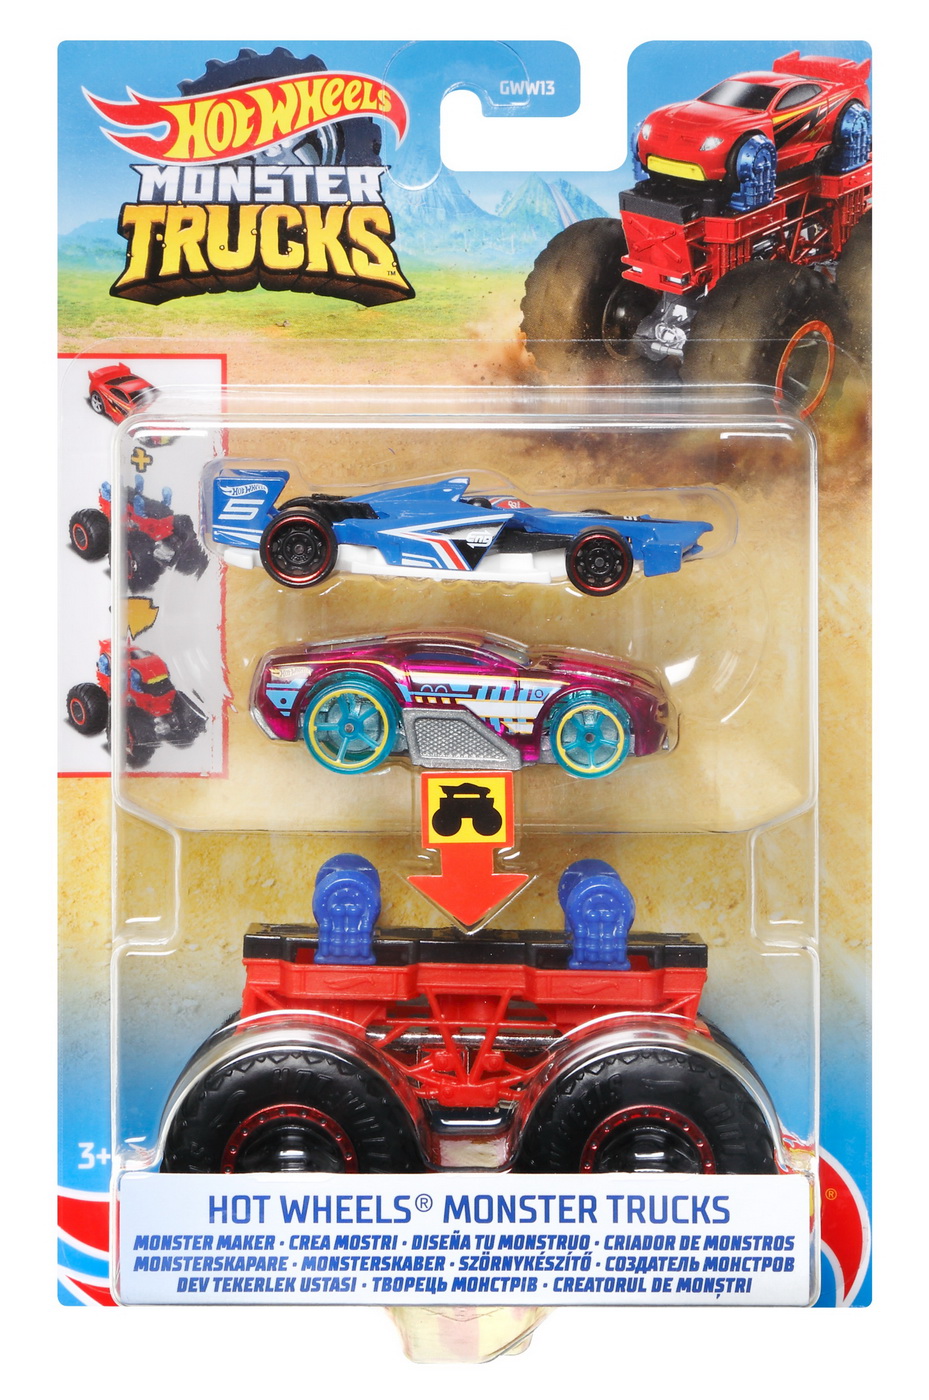 Hot wheels monster truck cu masinute roz si albastru | HOT WHEELS - Monster Truck image2